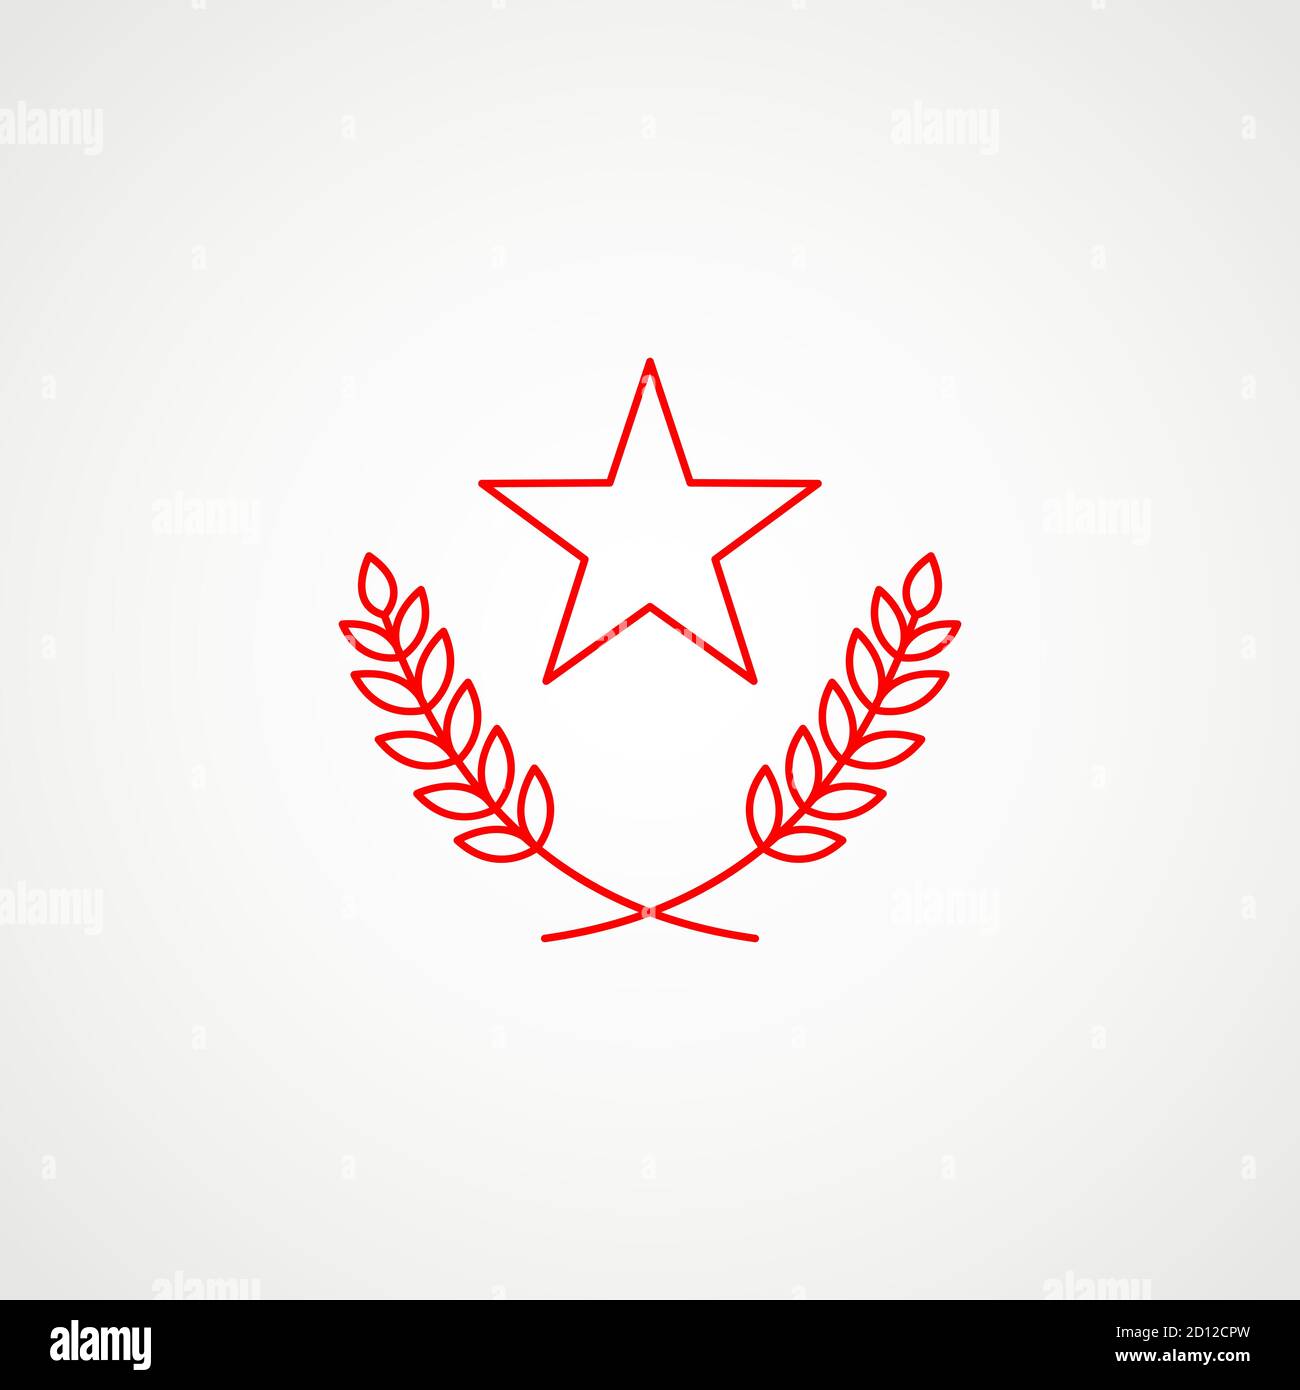 Lineare Ikone des Kommunismus. Stern mit Kranz. Rotes sowjetisches Emblem. Minimalistisches Wappen der UdSSR. Vektor Stock Vektor